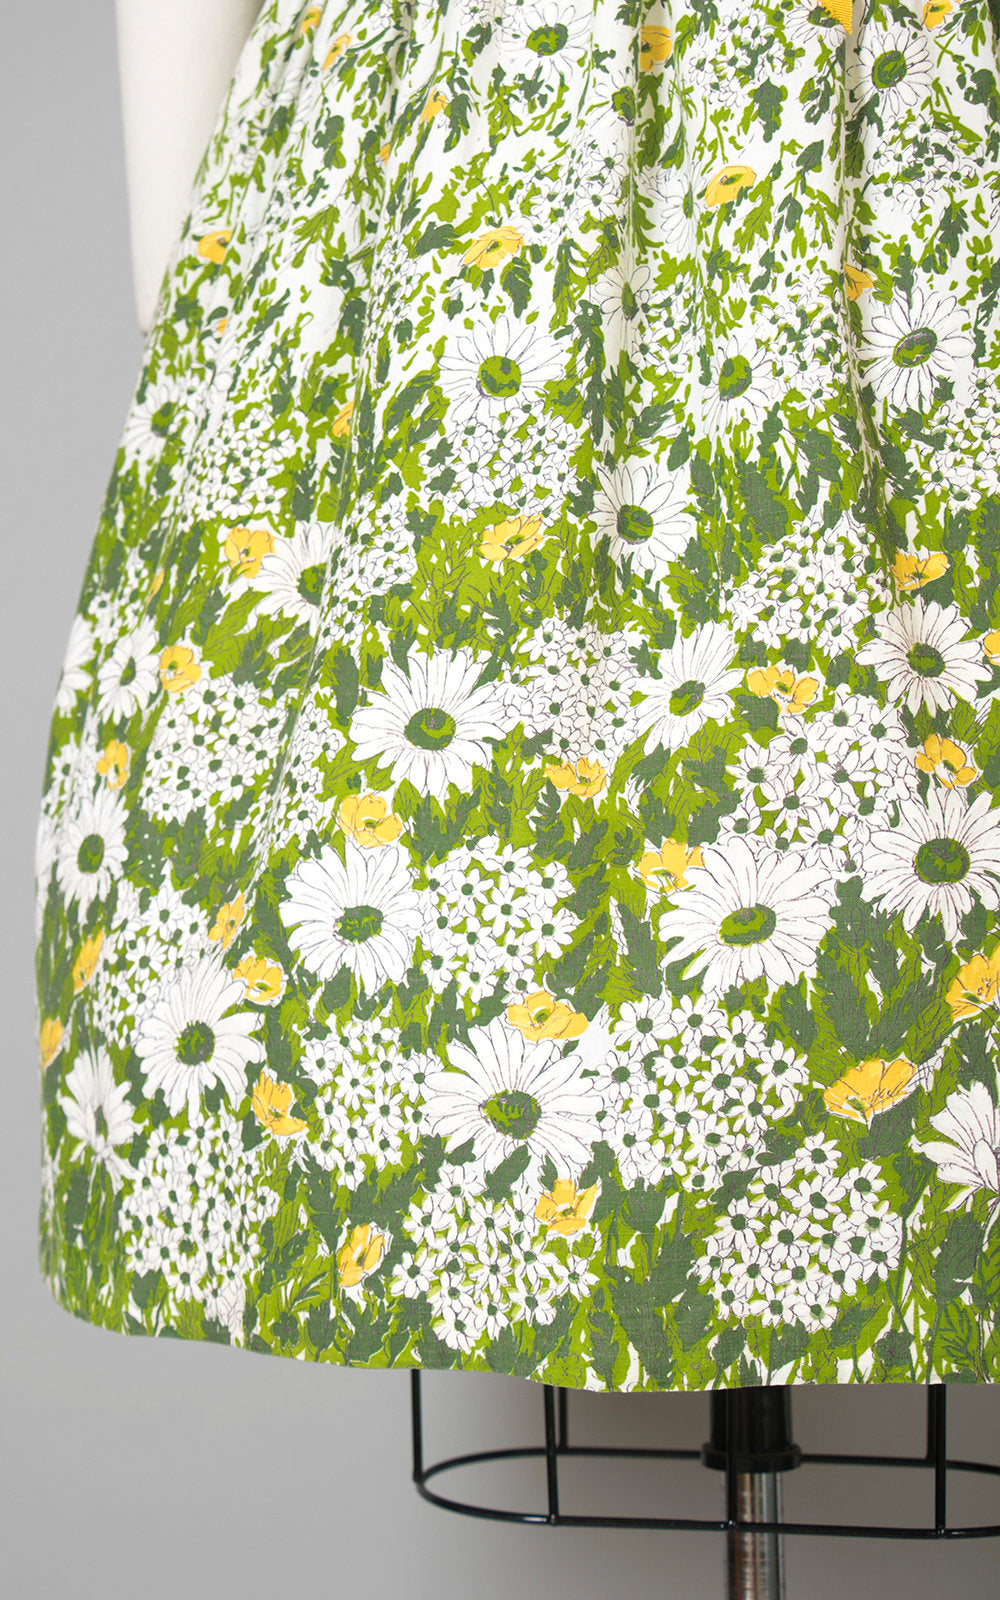 Vintage 1950s Dress | 50s Floral Daisy Border Print Cotton Green White Full Skirt Day Dress (medium)